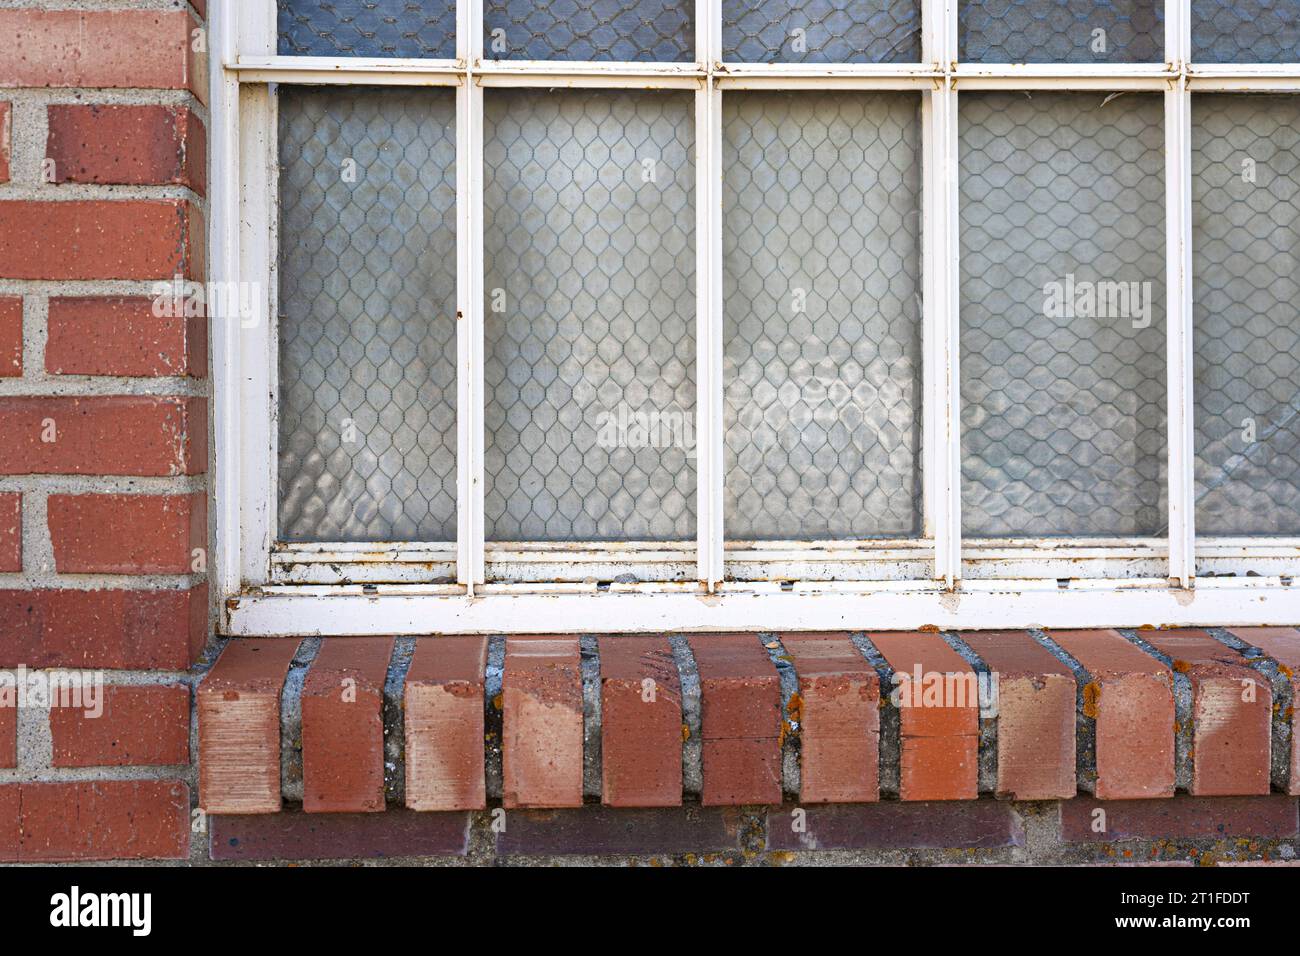 Die alte Fensternähe hat ein rotes Backsteinregal oder einen Felsvorsprung. Viele Fensterscheiben haben mattes Glas, um deckend zu machen. Bereit für das Hinzufügen von Regalsitzern. Stockfoto